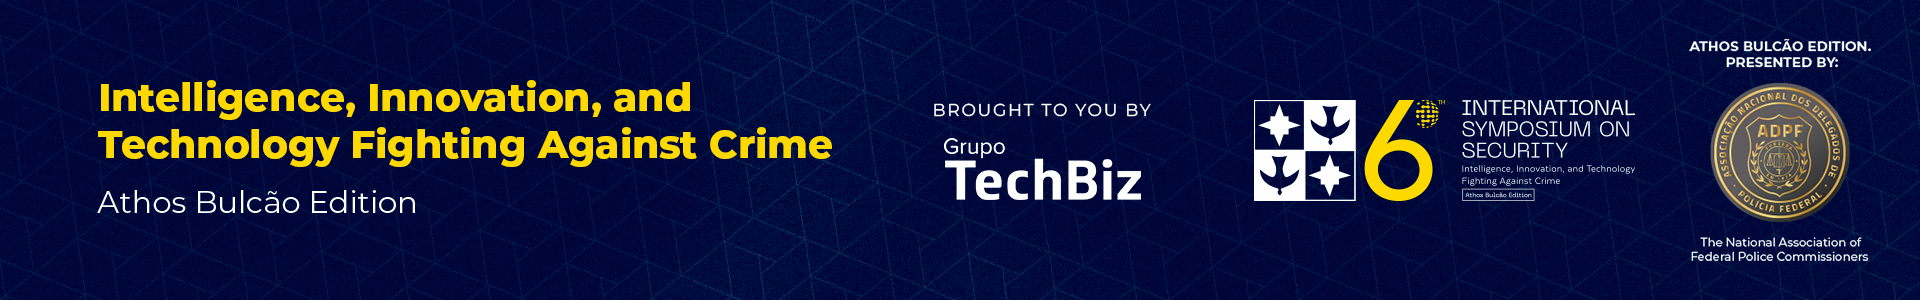 Grupo
        Techbiz